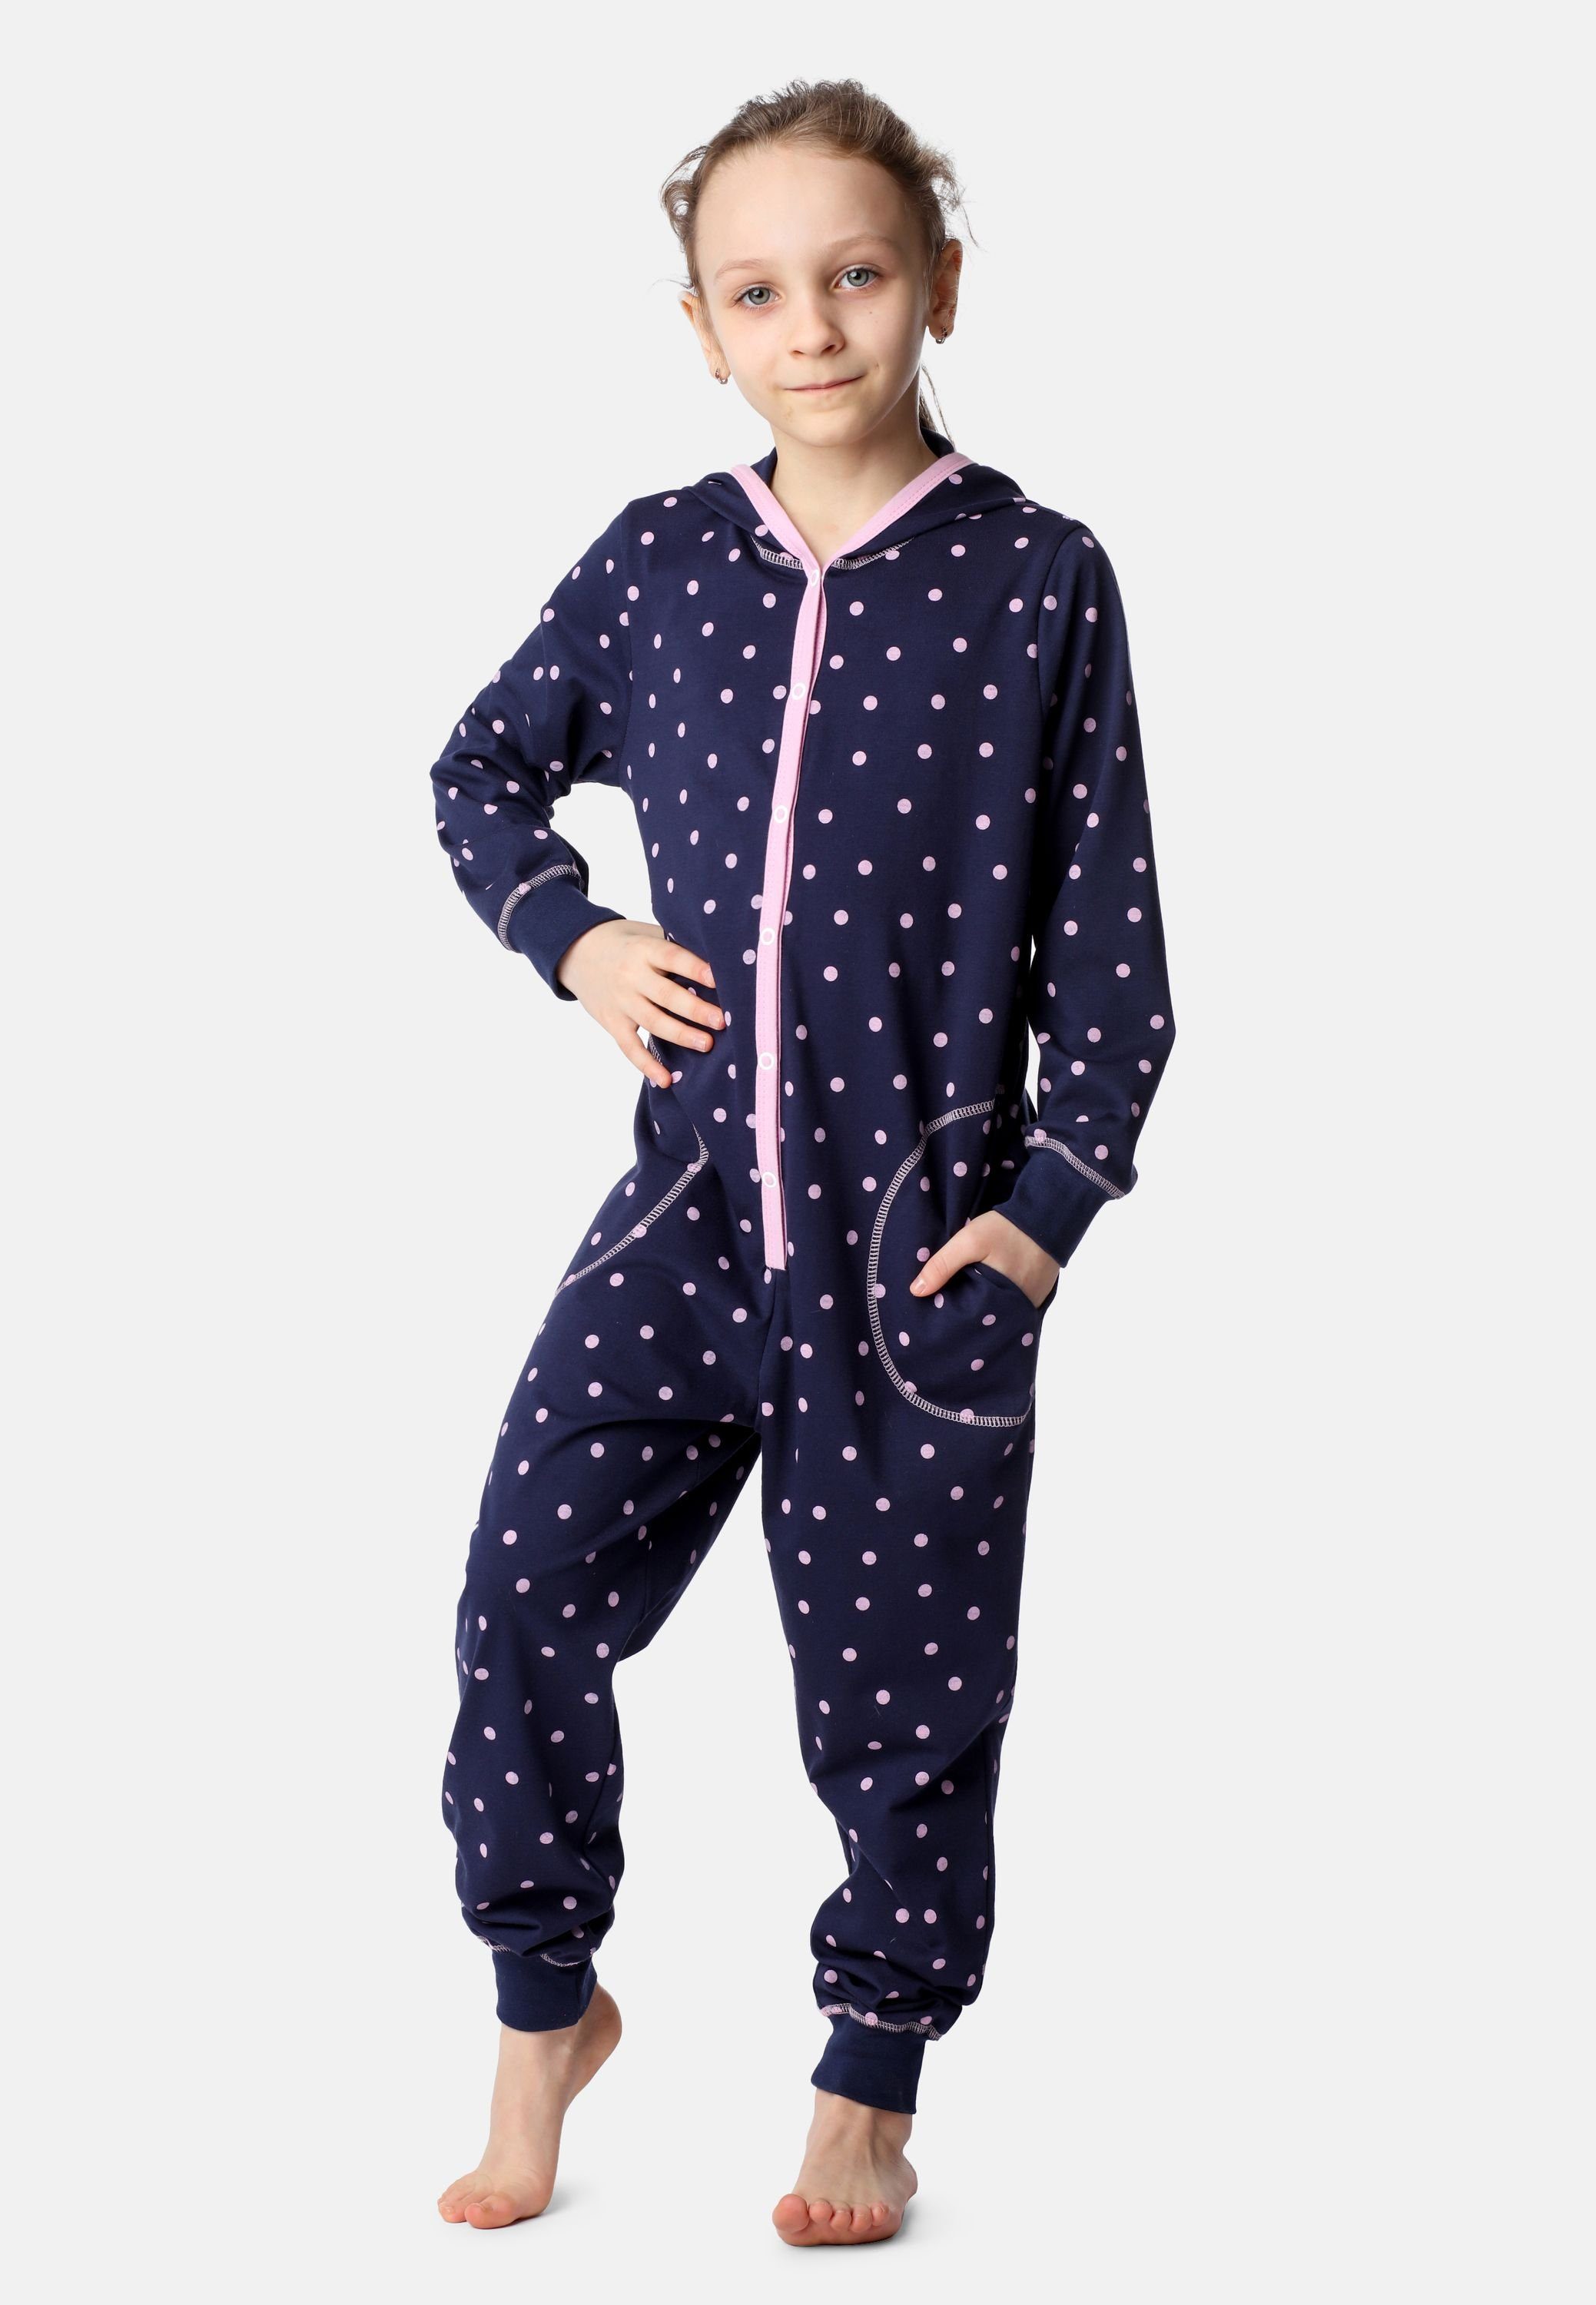 Mädchen Kapuze Merry Punkte Marineblau Schlafanzug Schlafoverall Rosa MS10-223 mit Style